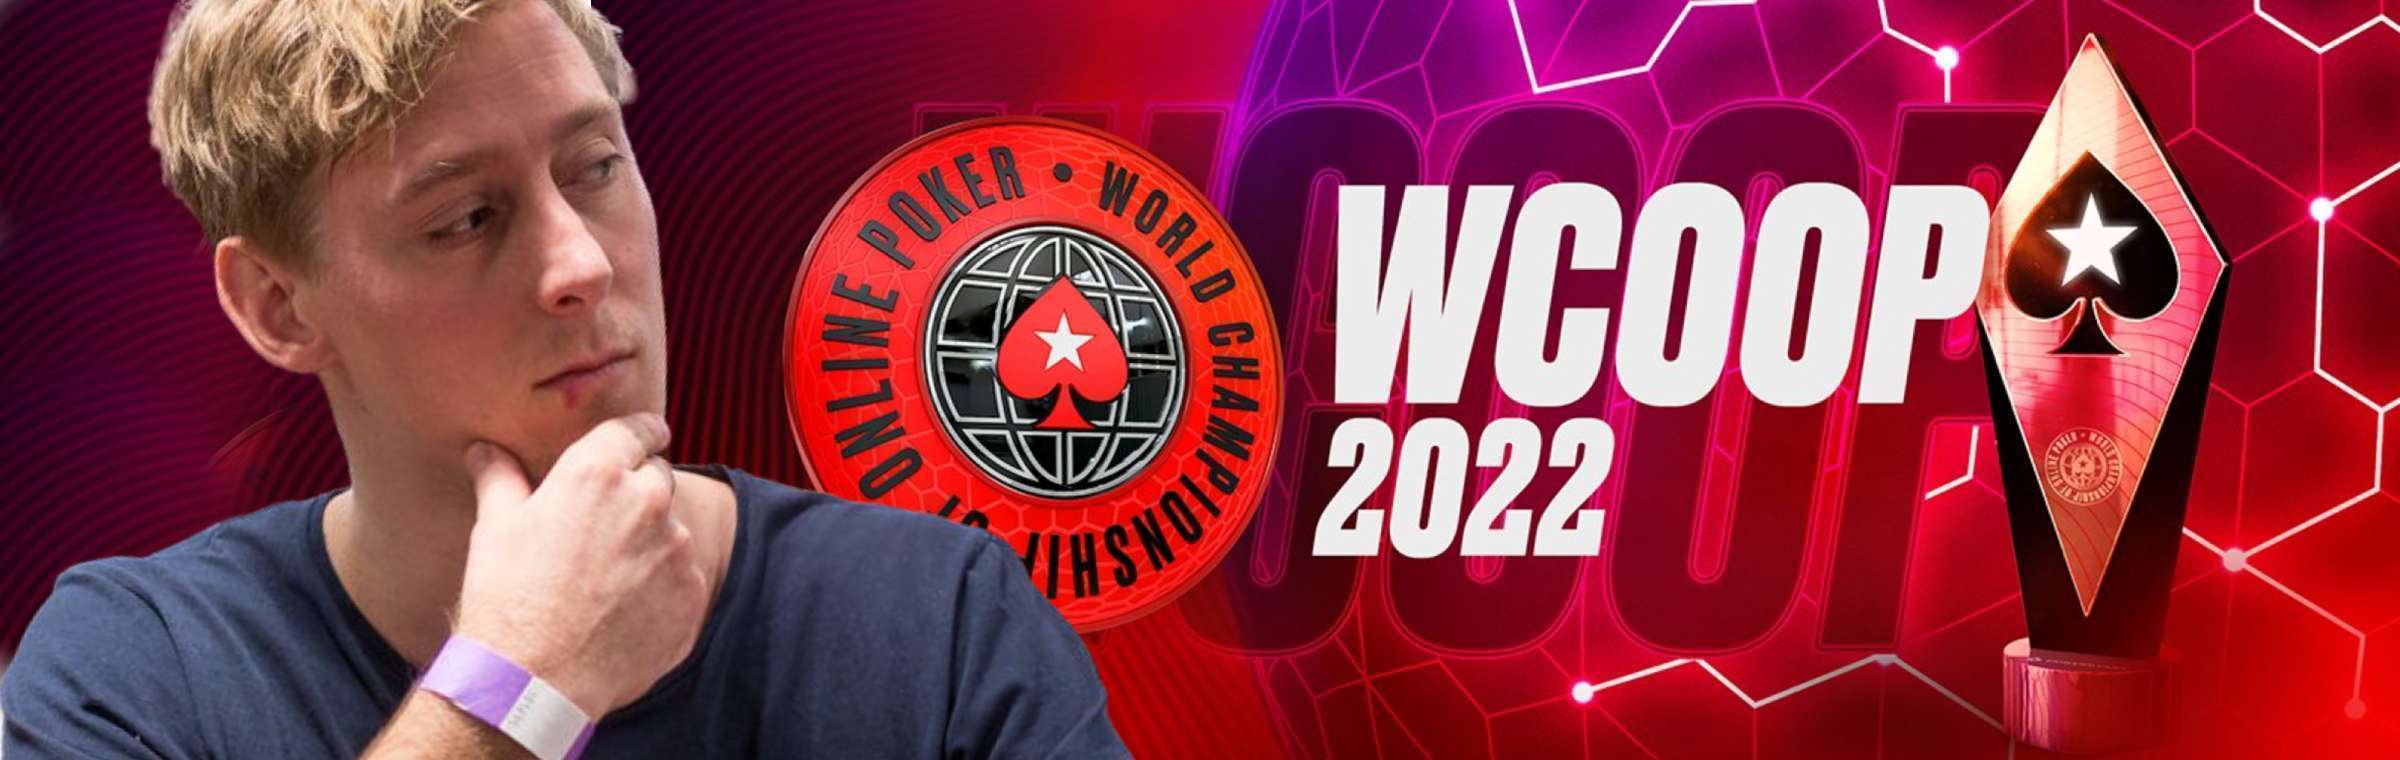 Graftekkel WCOOP 2022